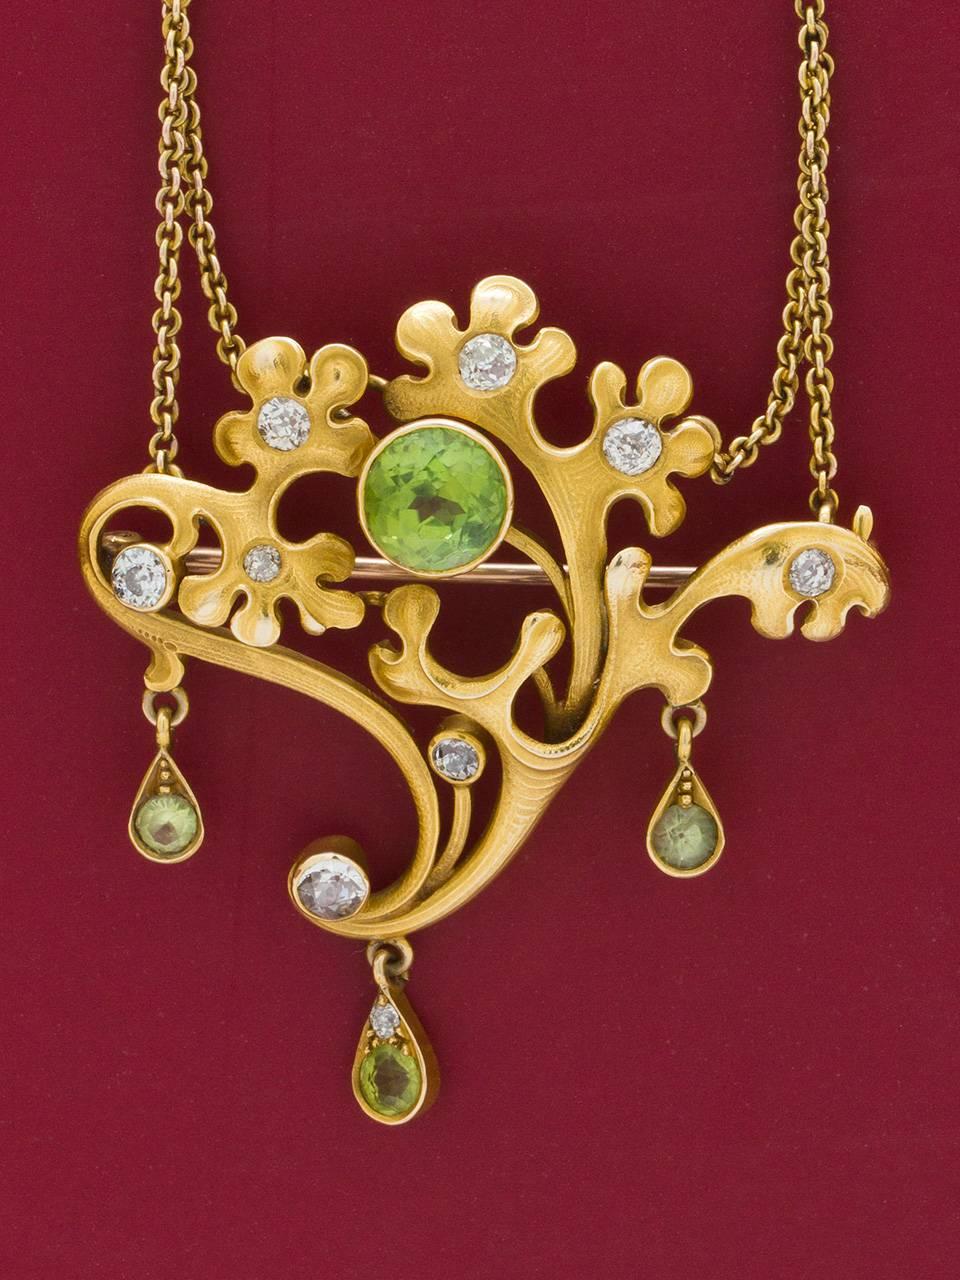 Women's Art Nouveau  Peridot and Diamond Pin and Pendant  